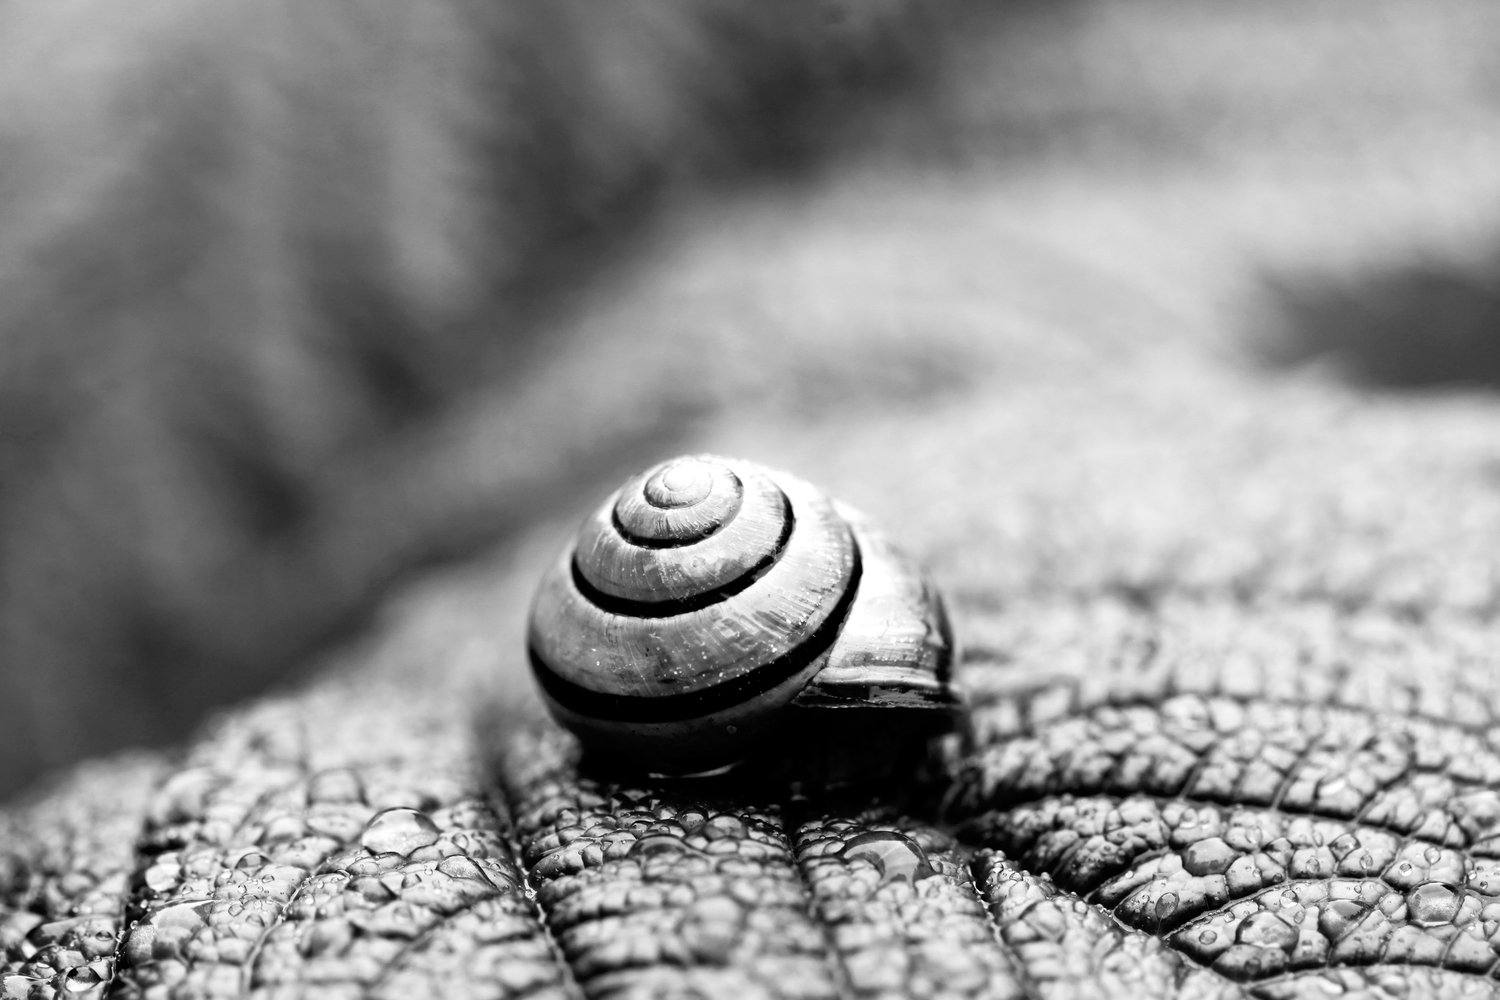 snail+bw+8x12.jpg